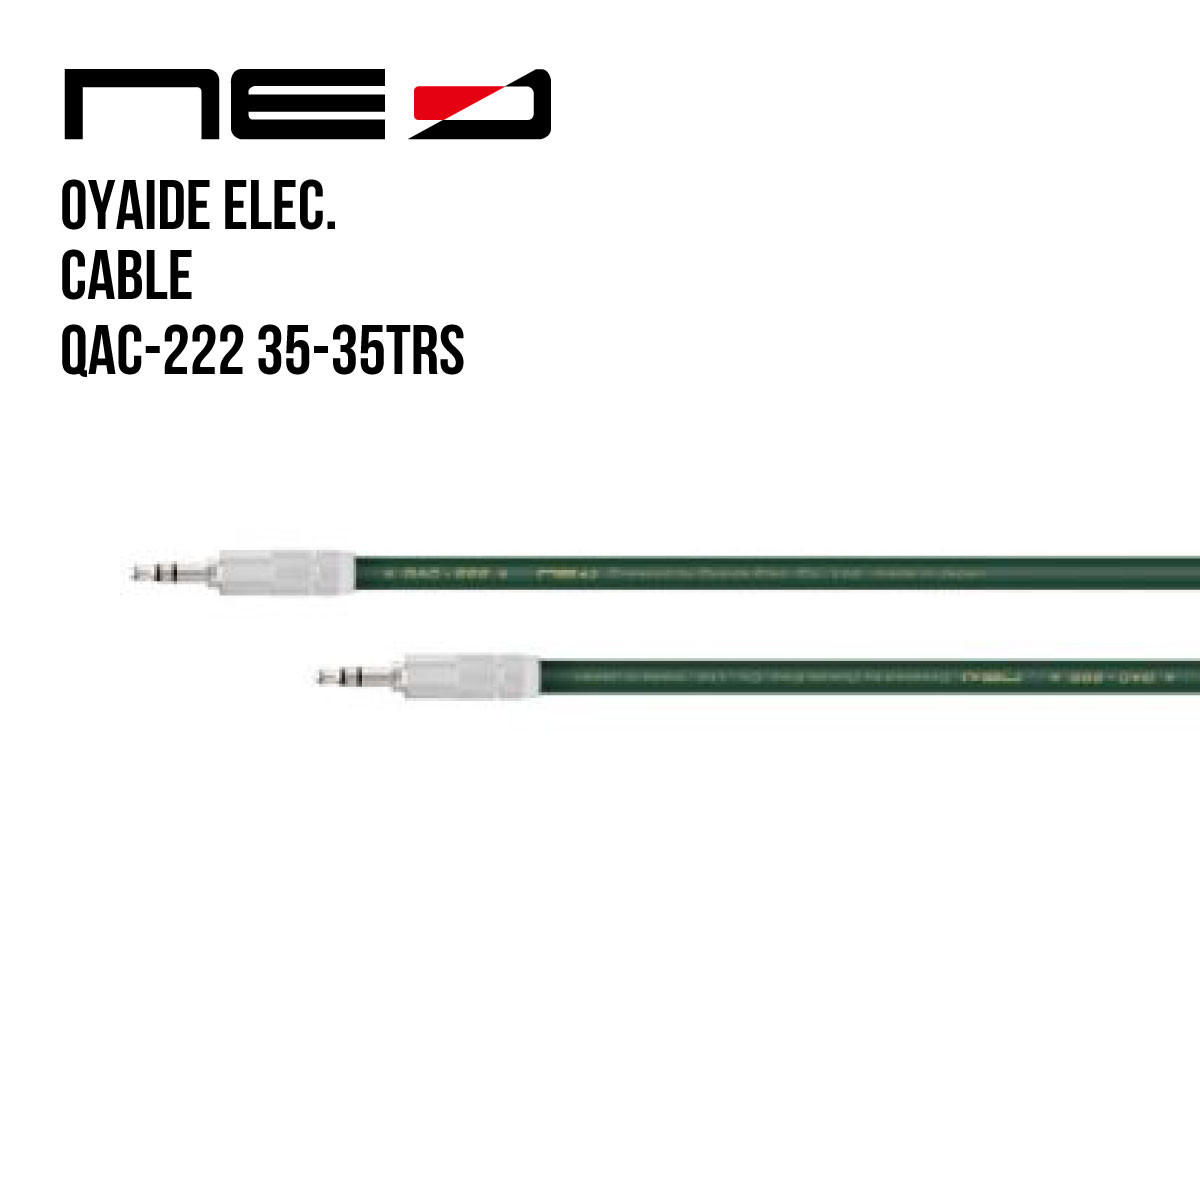 オヤイデ電気 NEOケーブル QAC-222 35-35TRS/3.0 (3.5mini TRS - 3.5mini TRS ステレオタイプ 3m) OYAIDE Line Cable